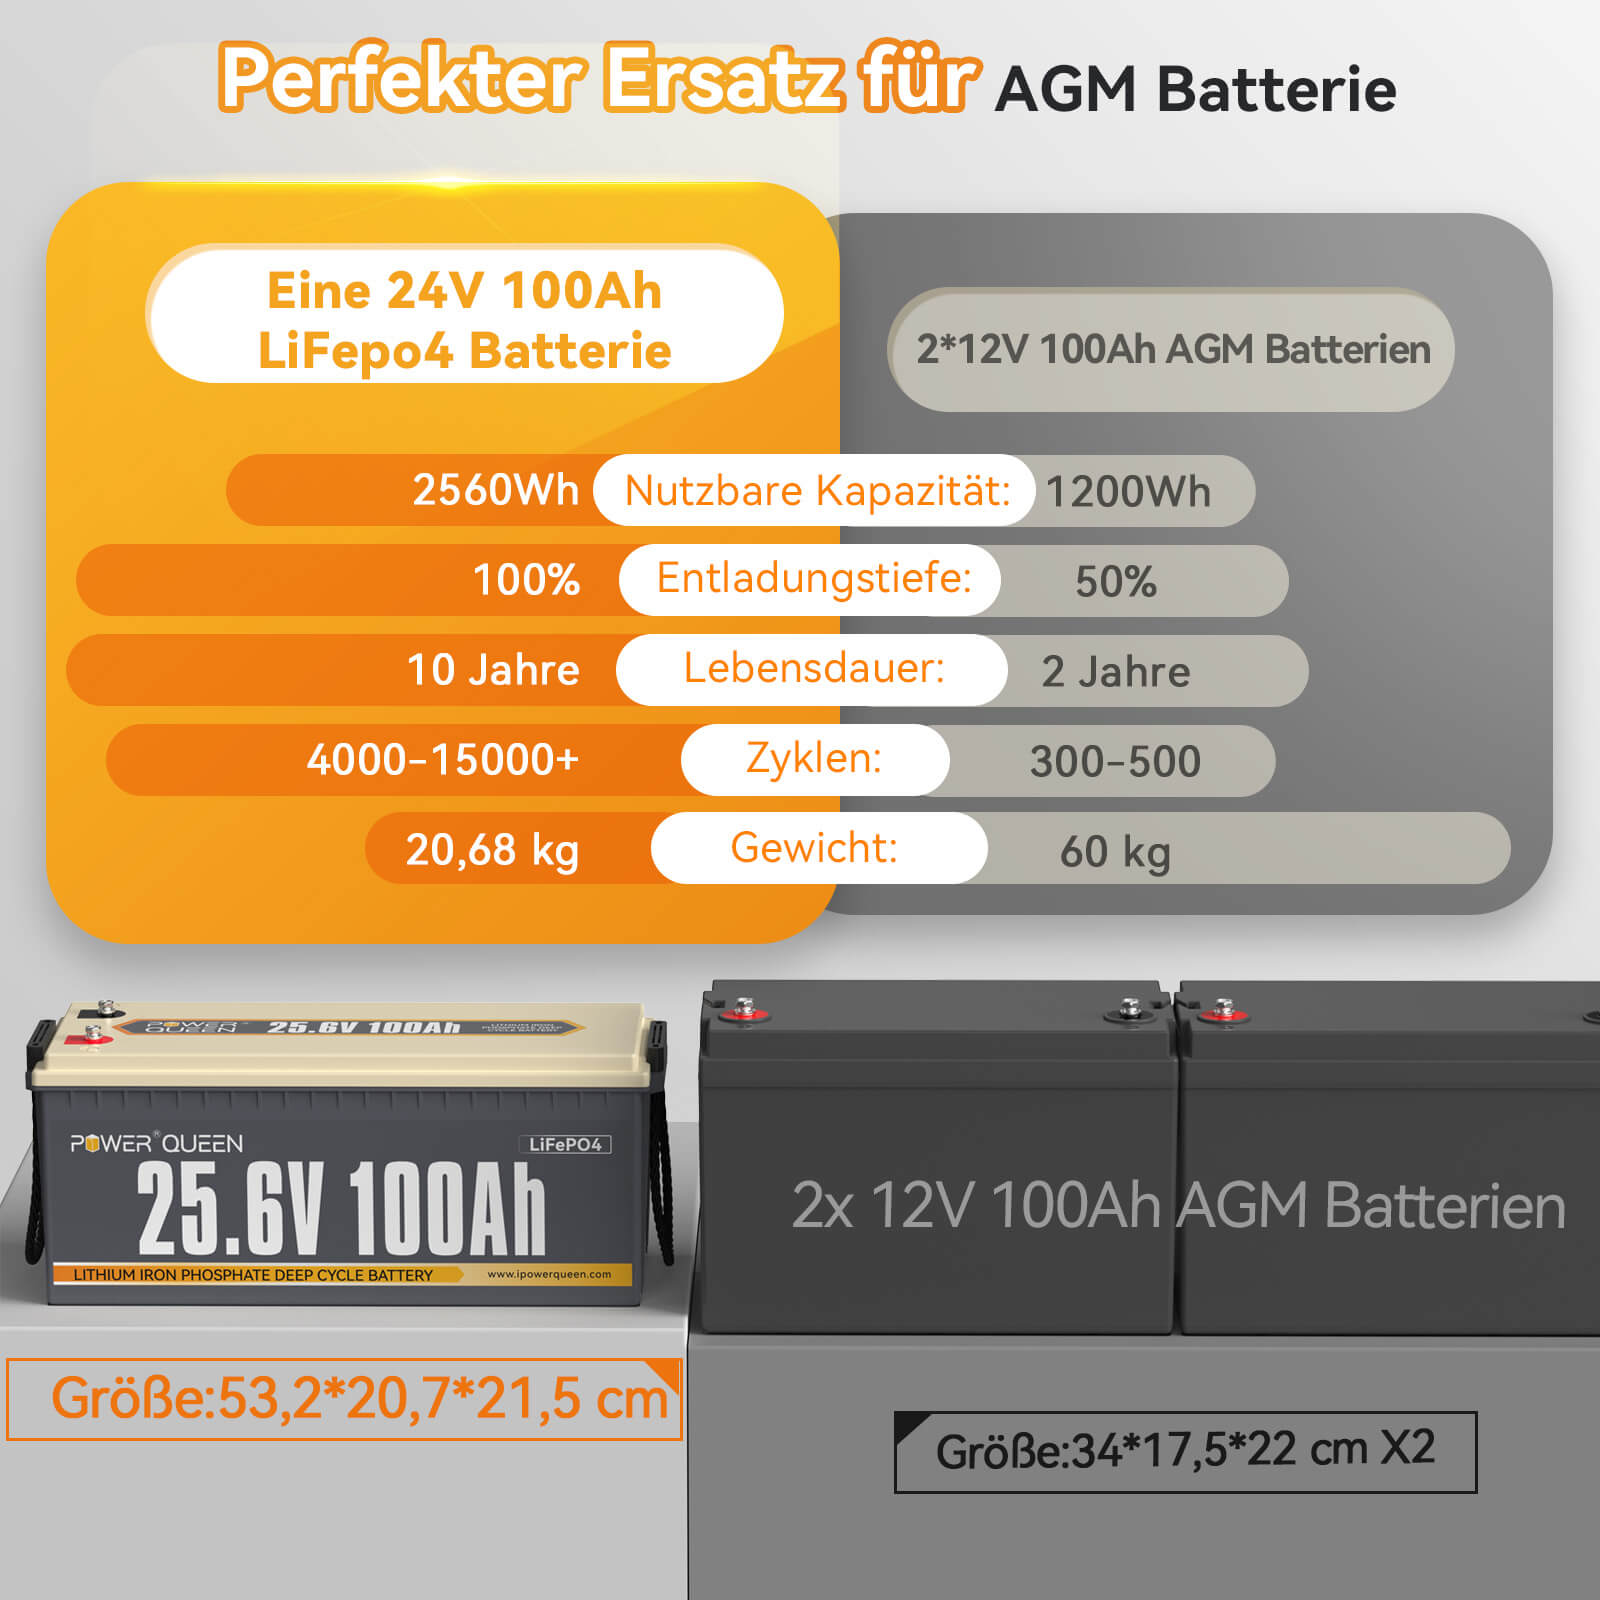 Come nuovo: batteria Power Queen 25,6 V 100 Ah LiFePO4, BMS integrato da 100 A.